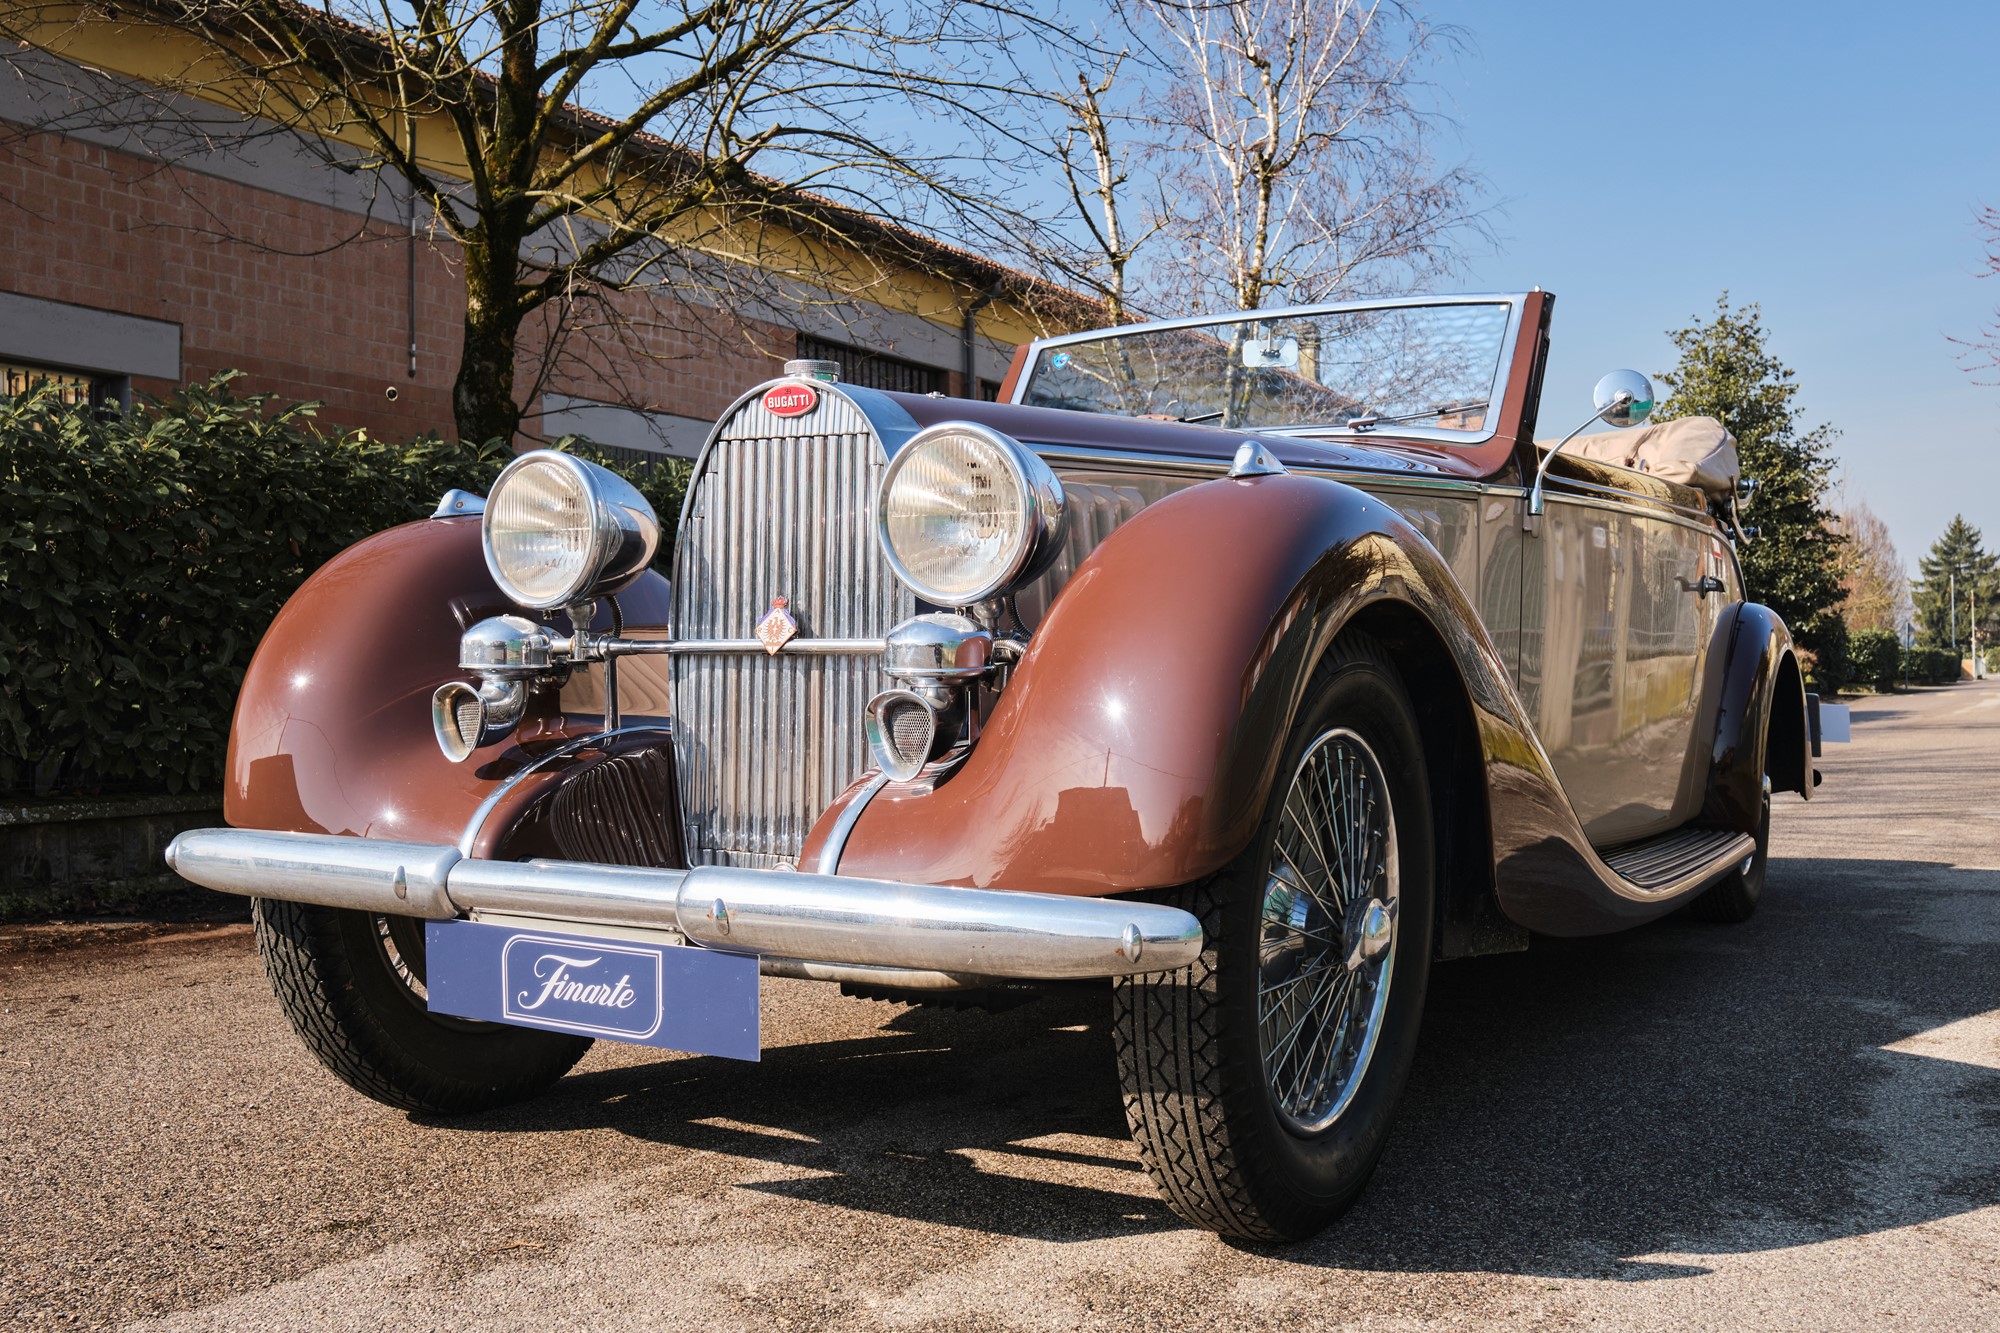 1936 Bugatti 57 cabriolet (Graber) - Image 13 of 13